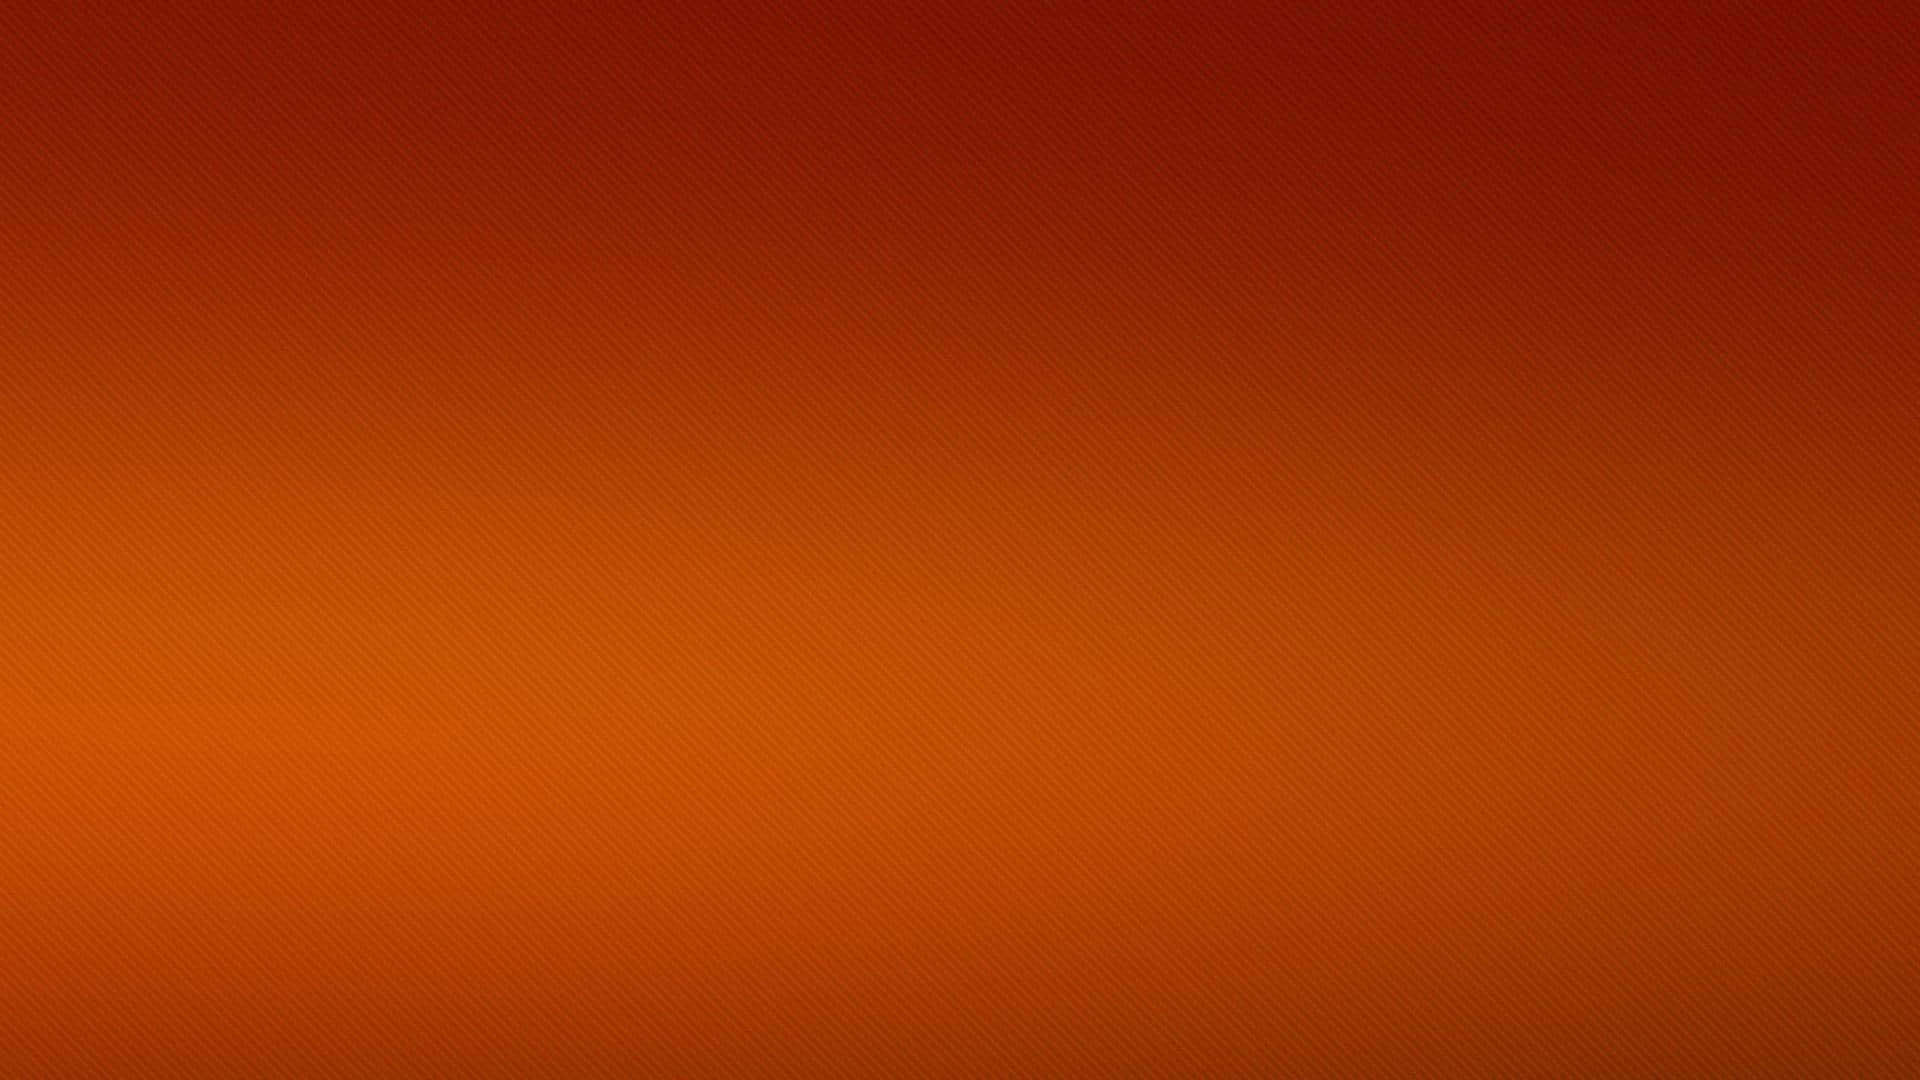 Sfondoscuro Con Gradiente Arancione Plain Per Zoom.